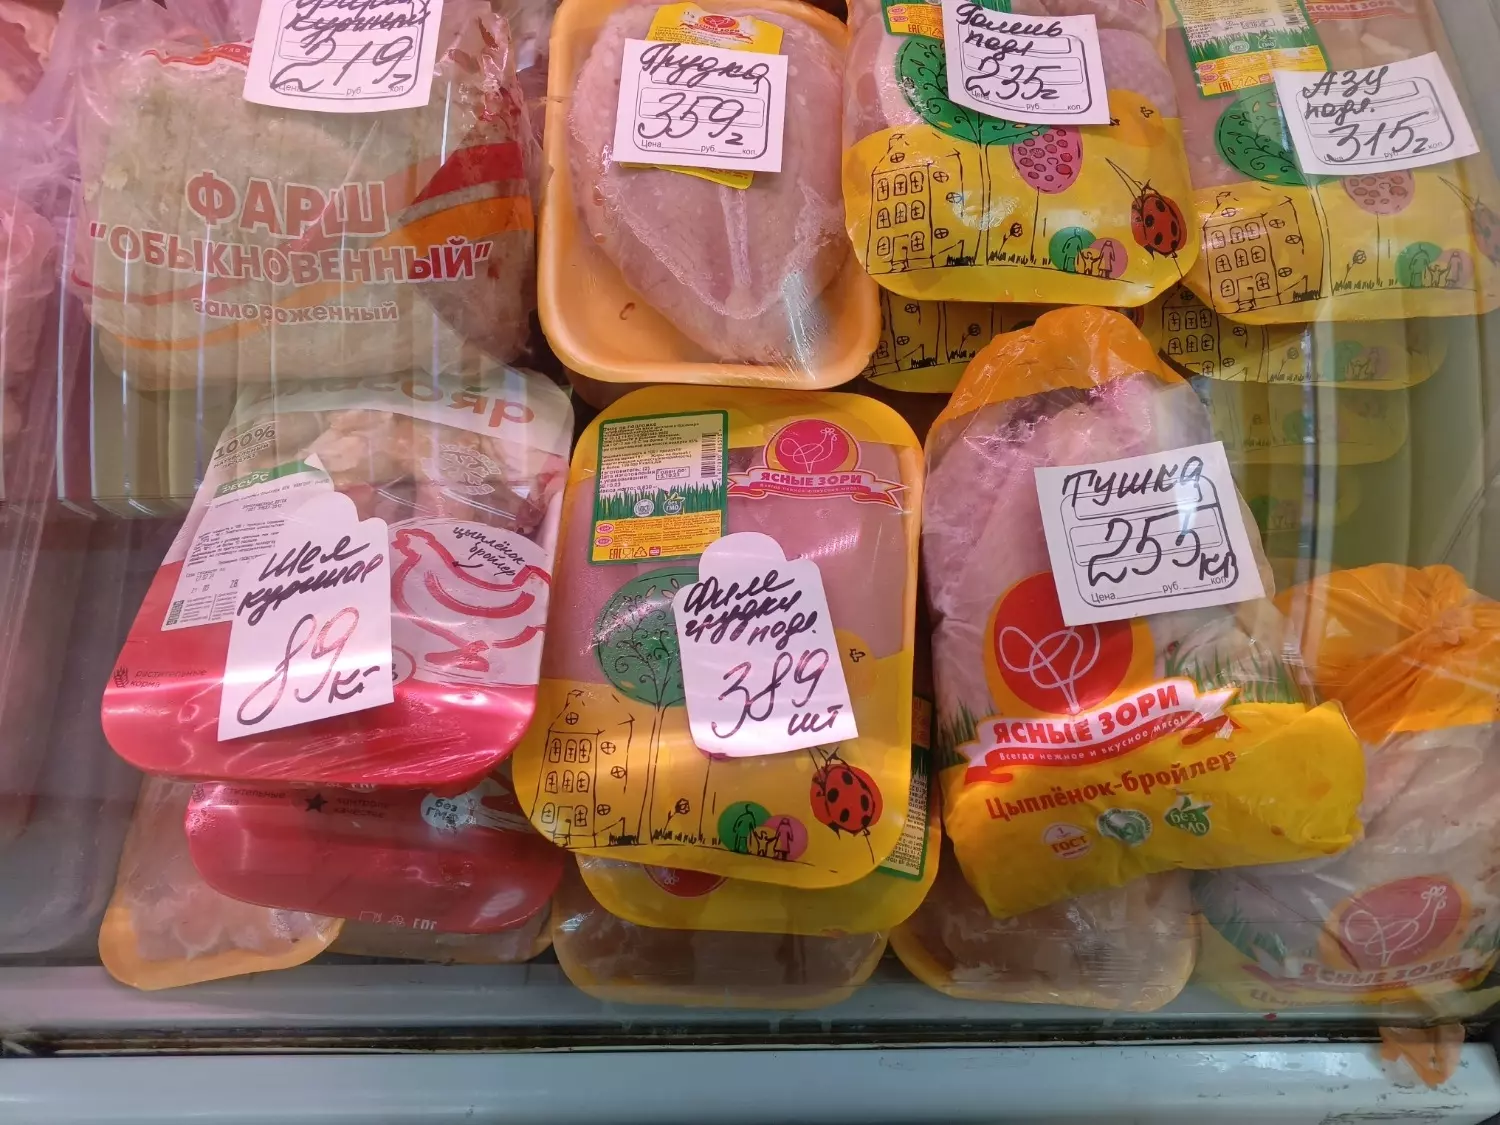 Цена на курицу "Ясные зори" в Белгороде